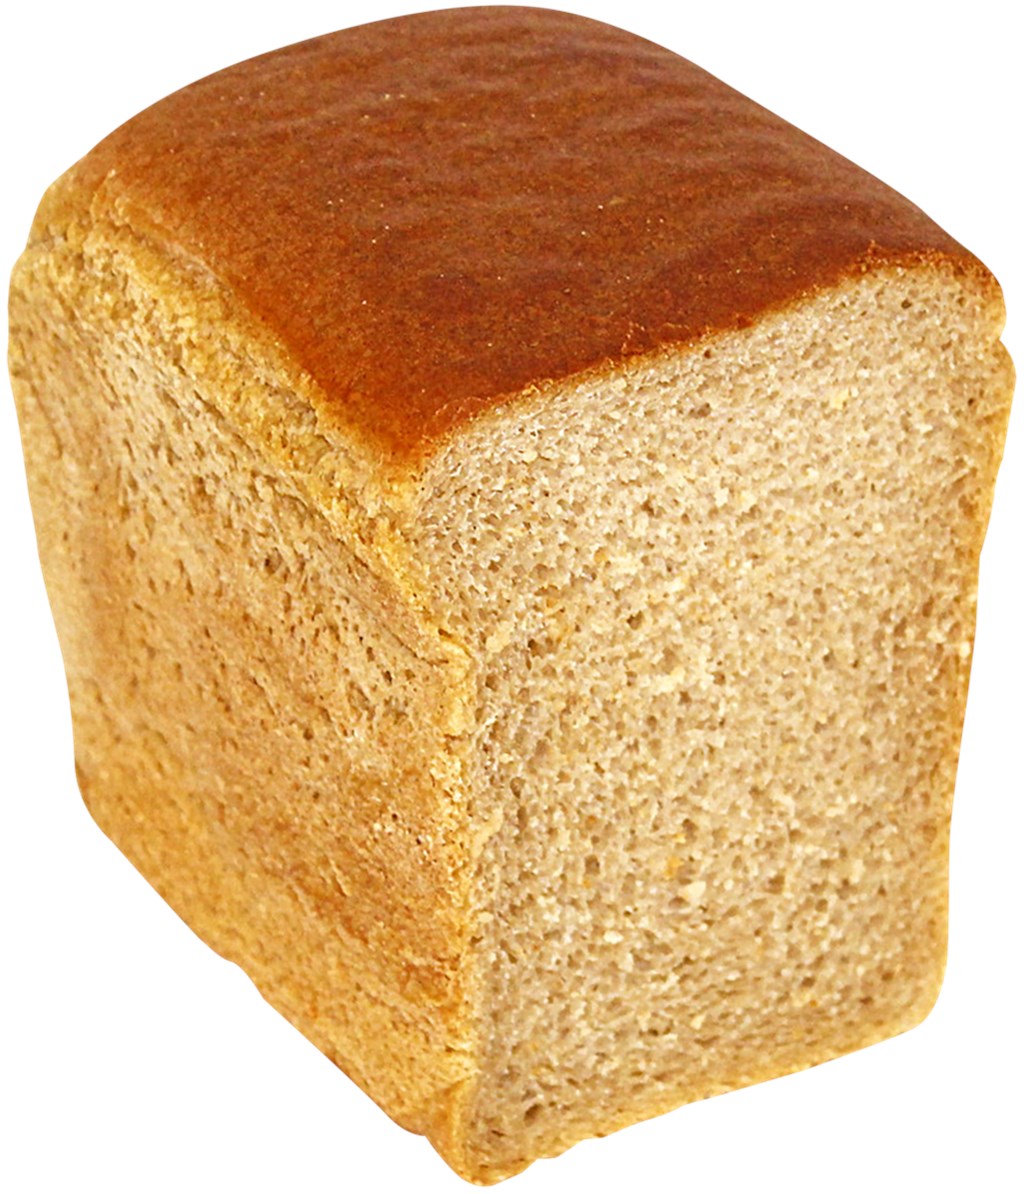 Хлеб формовой из пшеничной муки